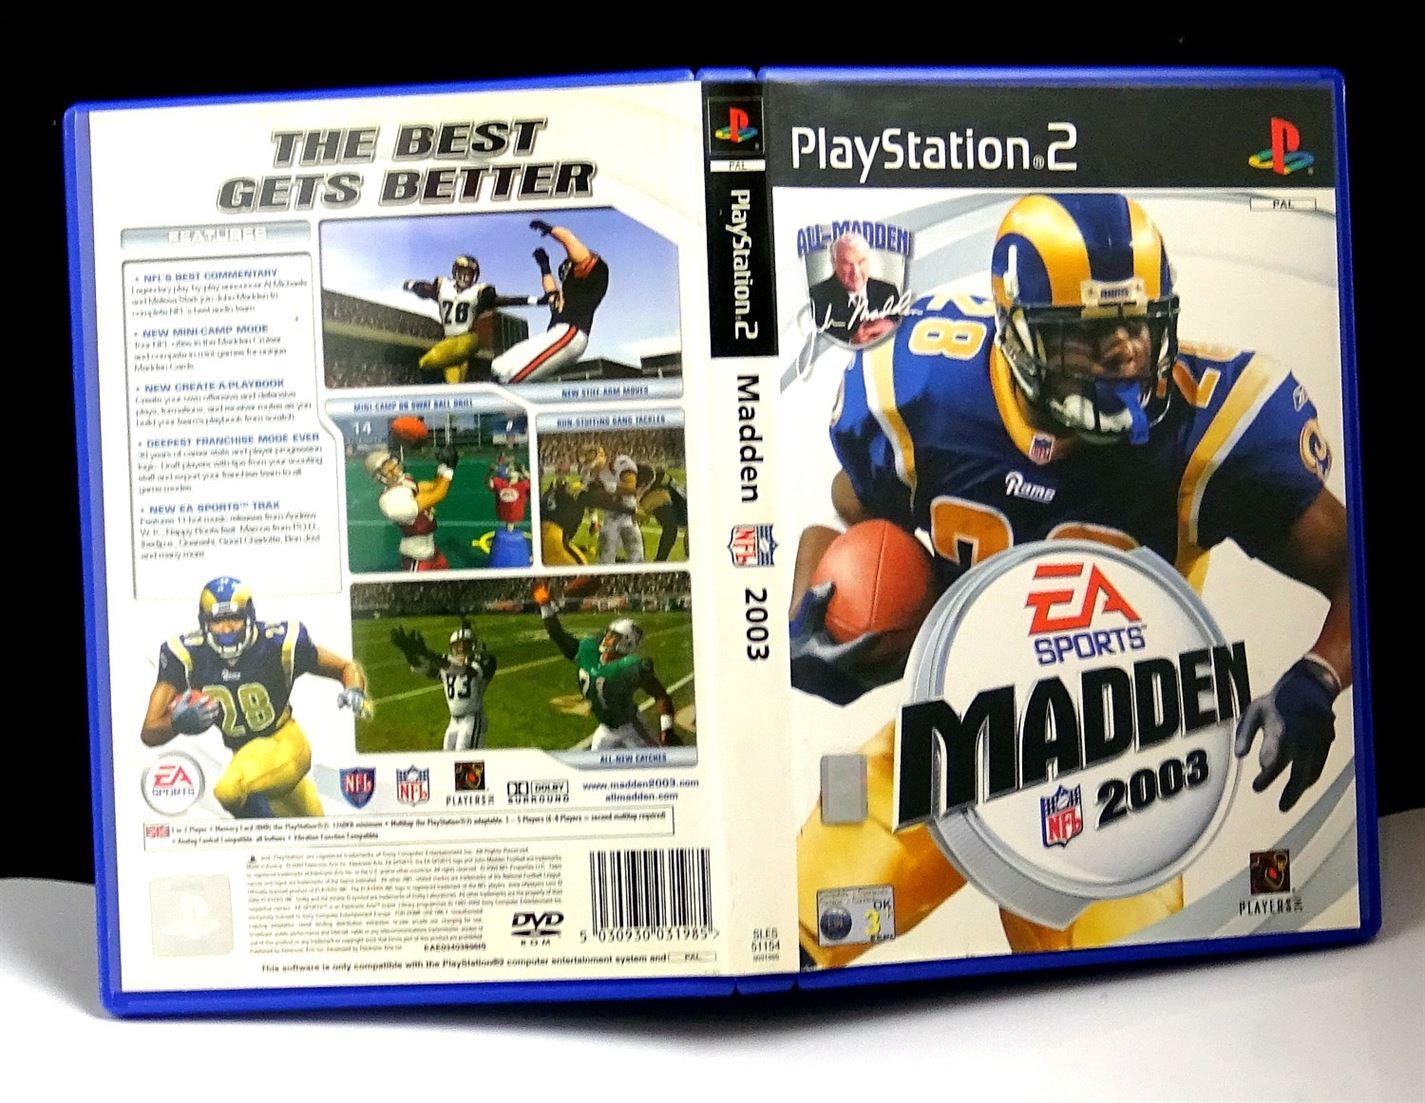 Madden NFL 2003 PS2 (Playstation 2) - UK Seller